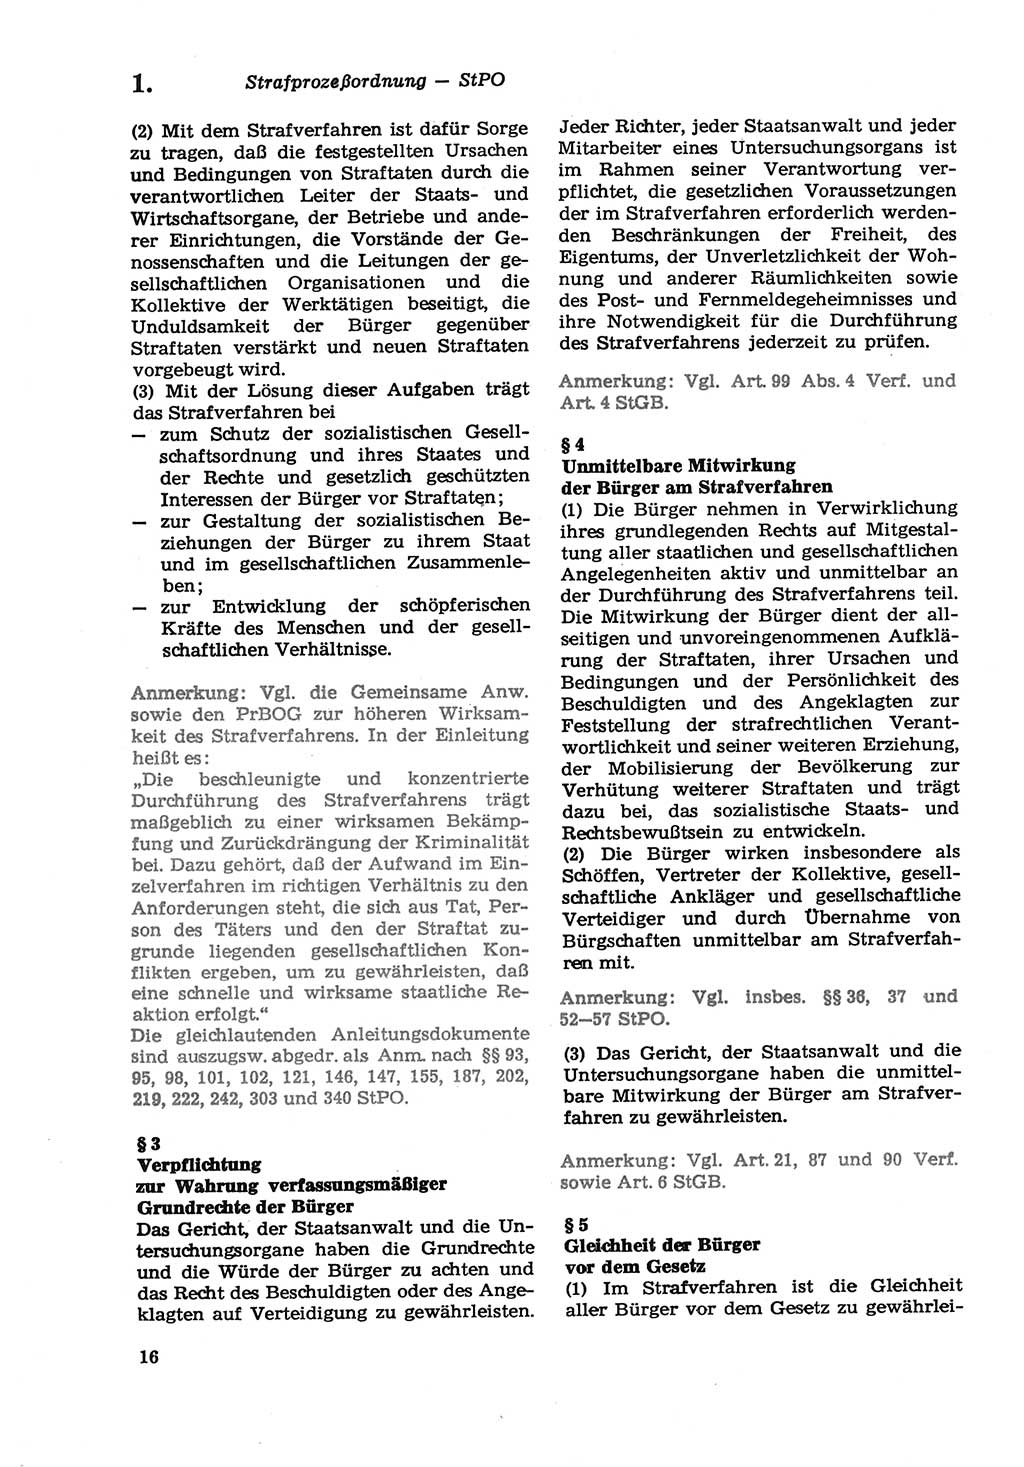 Strafprozeßordnung (StPO) der Deutschen Demokratischen Republik (DDR) sowie angrenzende Gesetze und Bestimmungen 1979, Seite 16 (StPO DDR Ges. Best. 1979, S. 16)